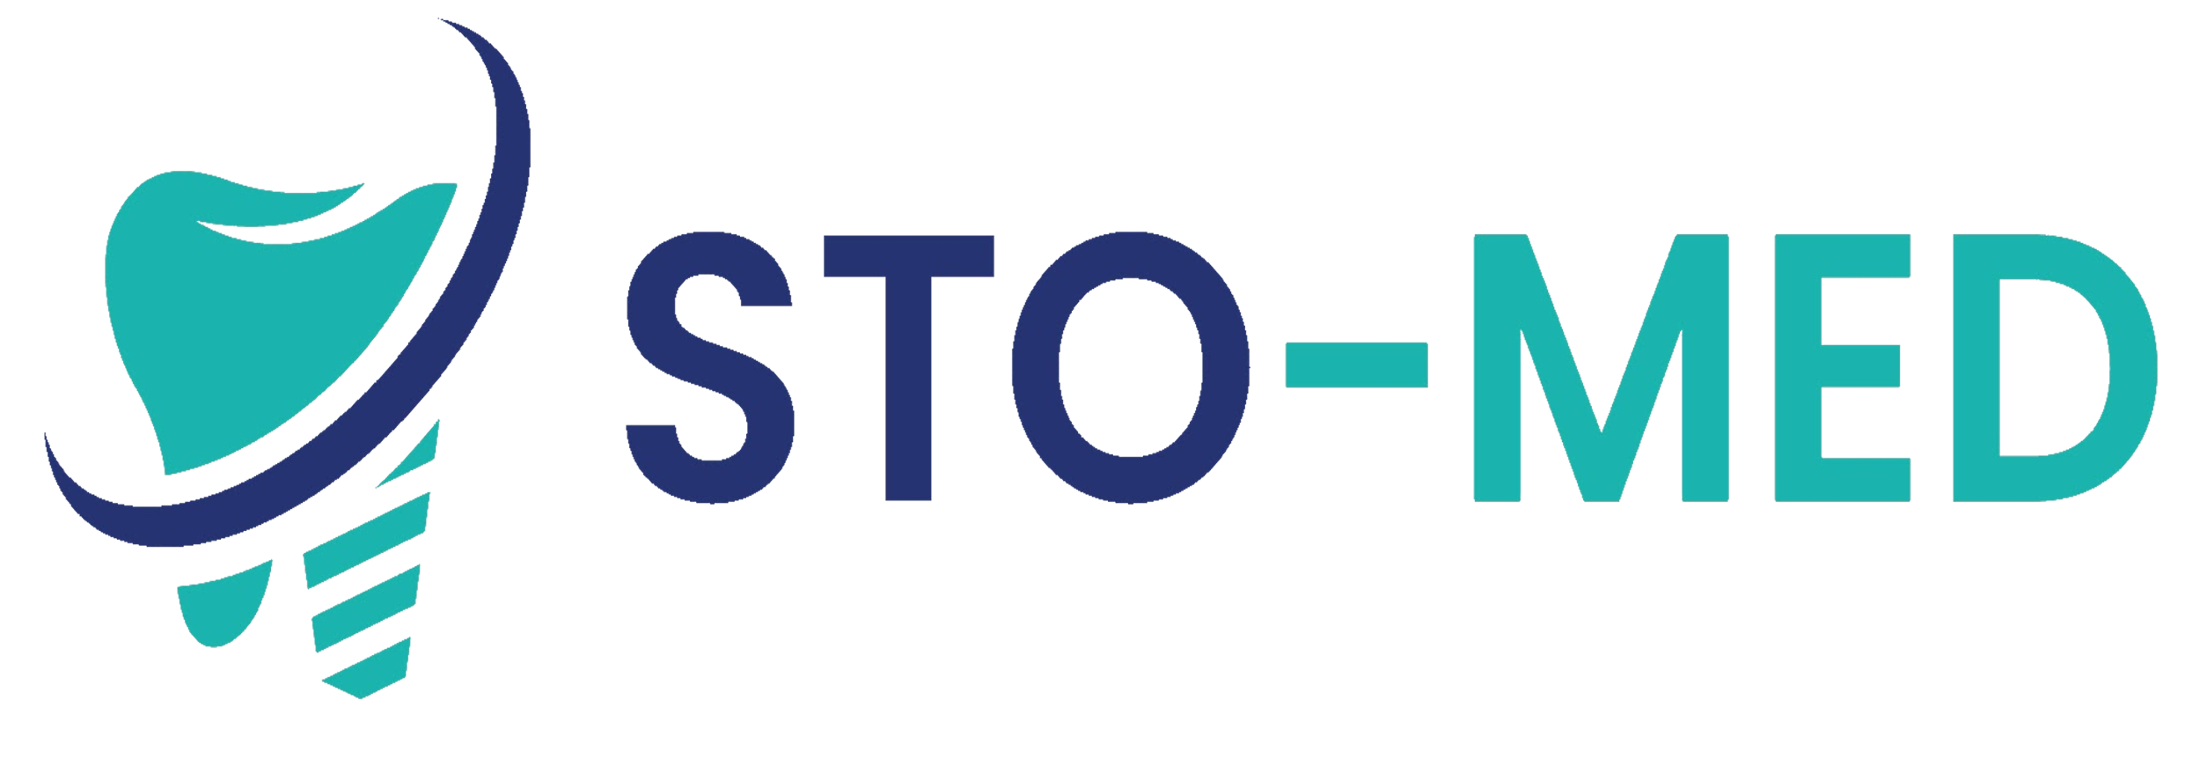 Logo firmy STOMED pełne, wykorzystane jako logo strony